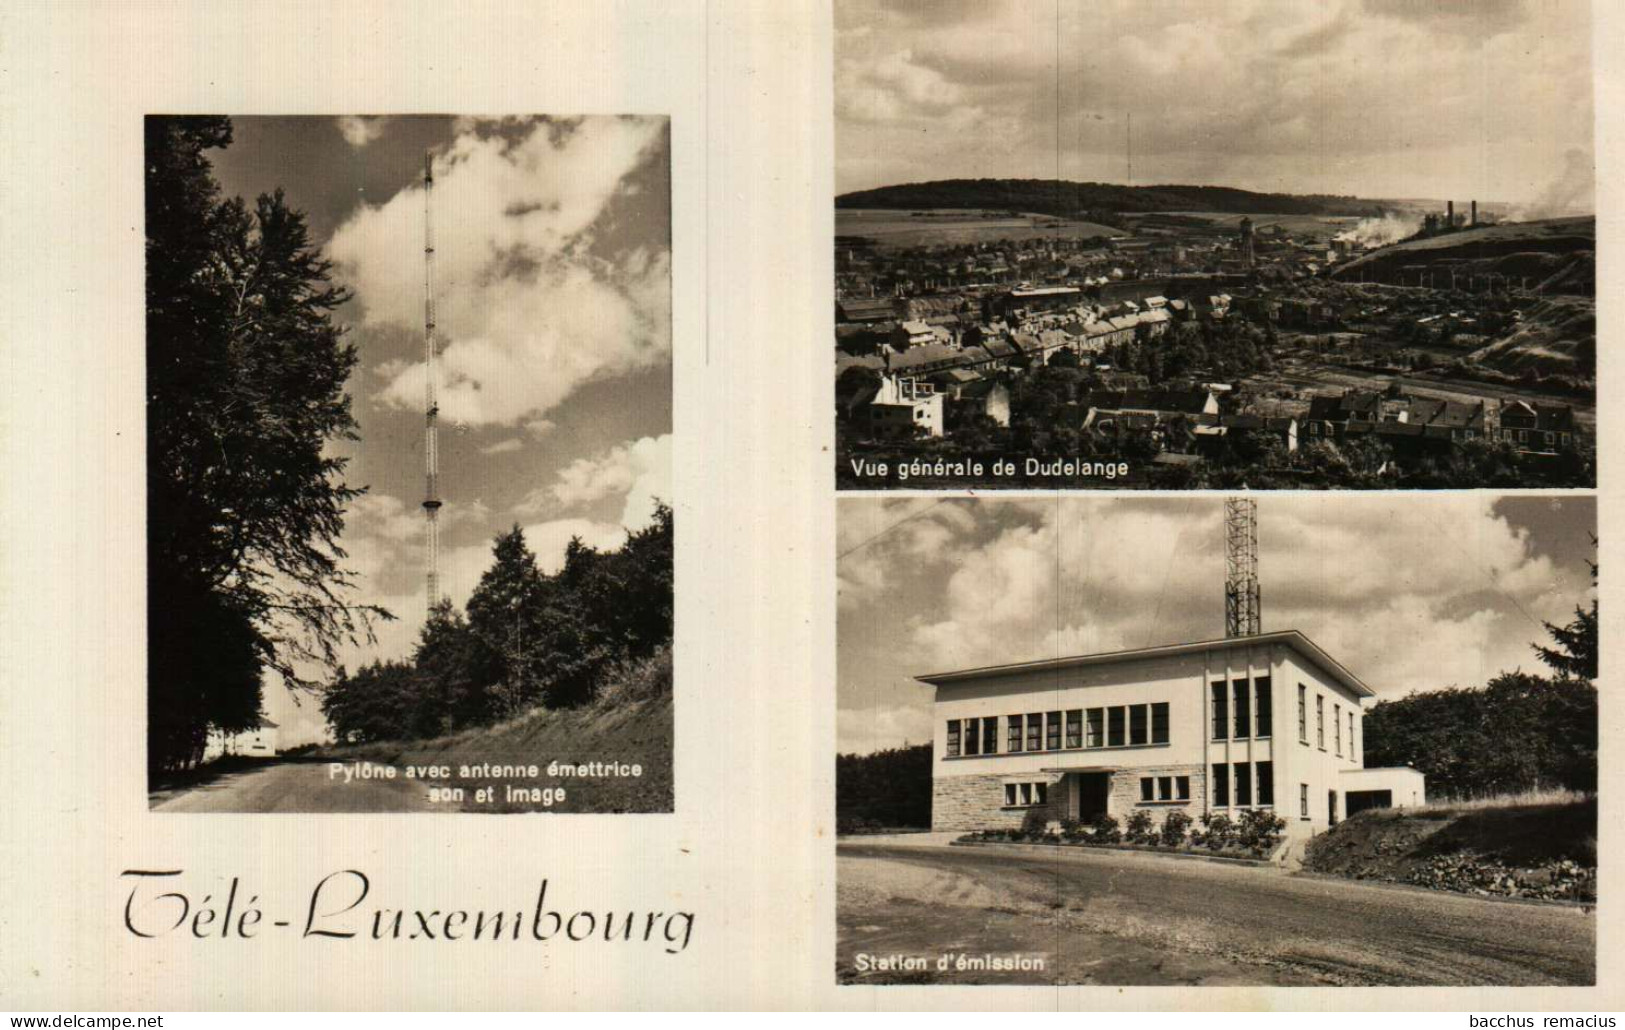 DUDELANGE -Télé-Luxembourg 1.Pylone Avec Antenne émettrice,Son Et Image 2.Vue Générale De Dudelange 3.Station D'Émission - Düdelingen